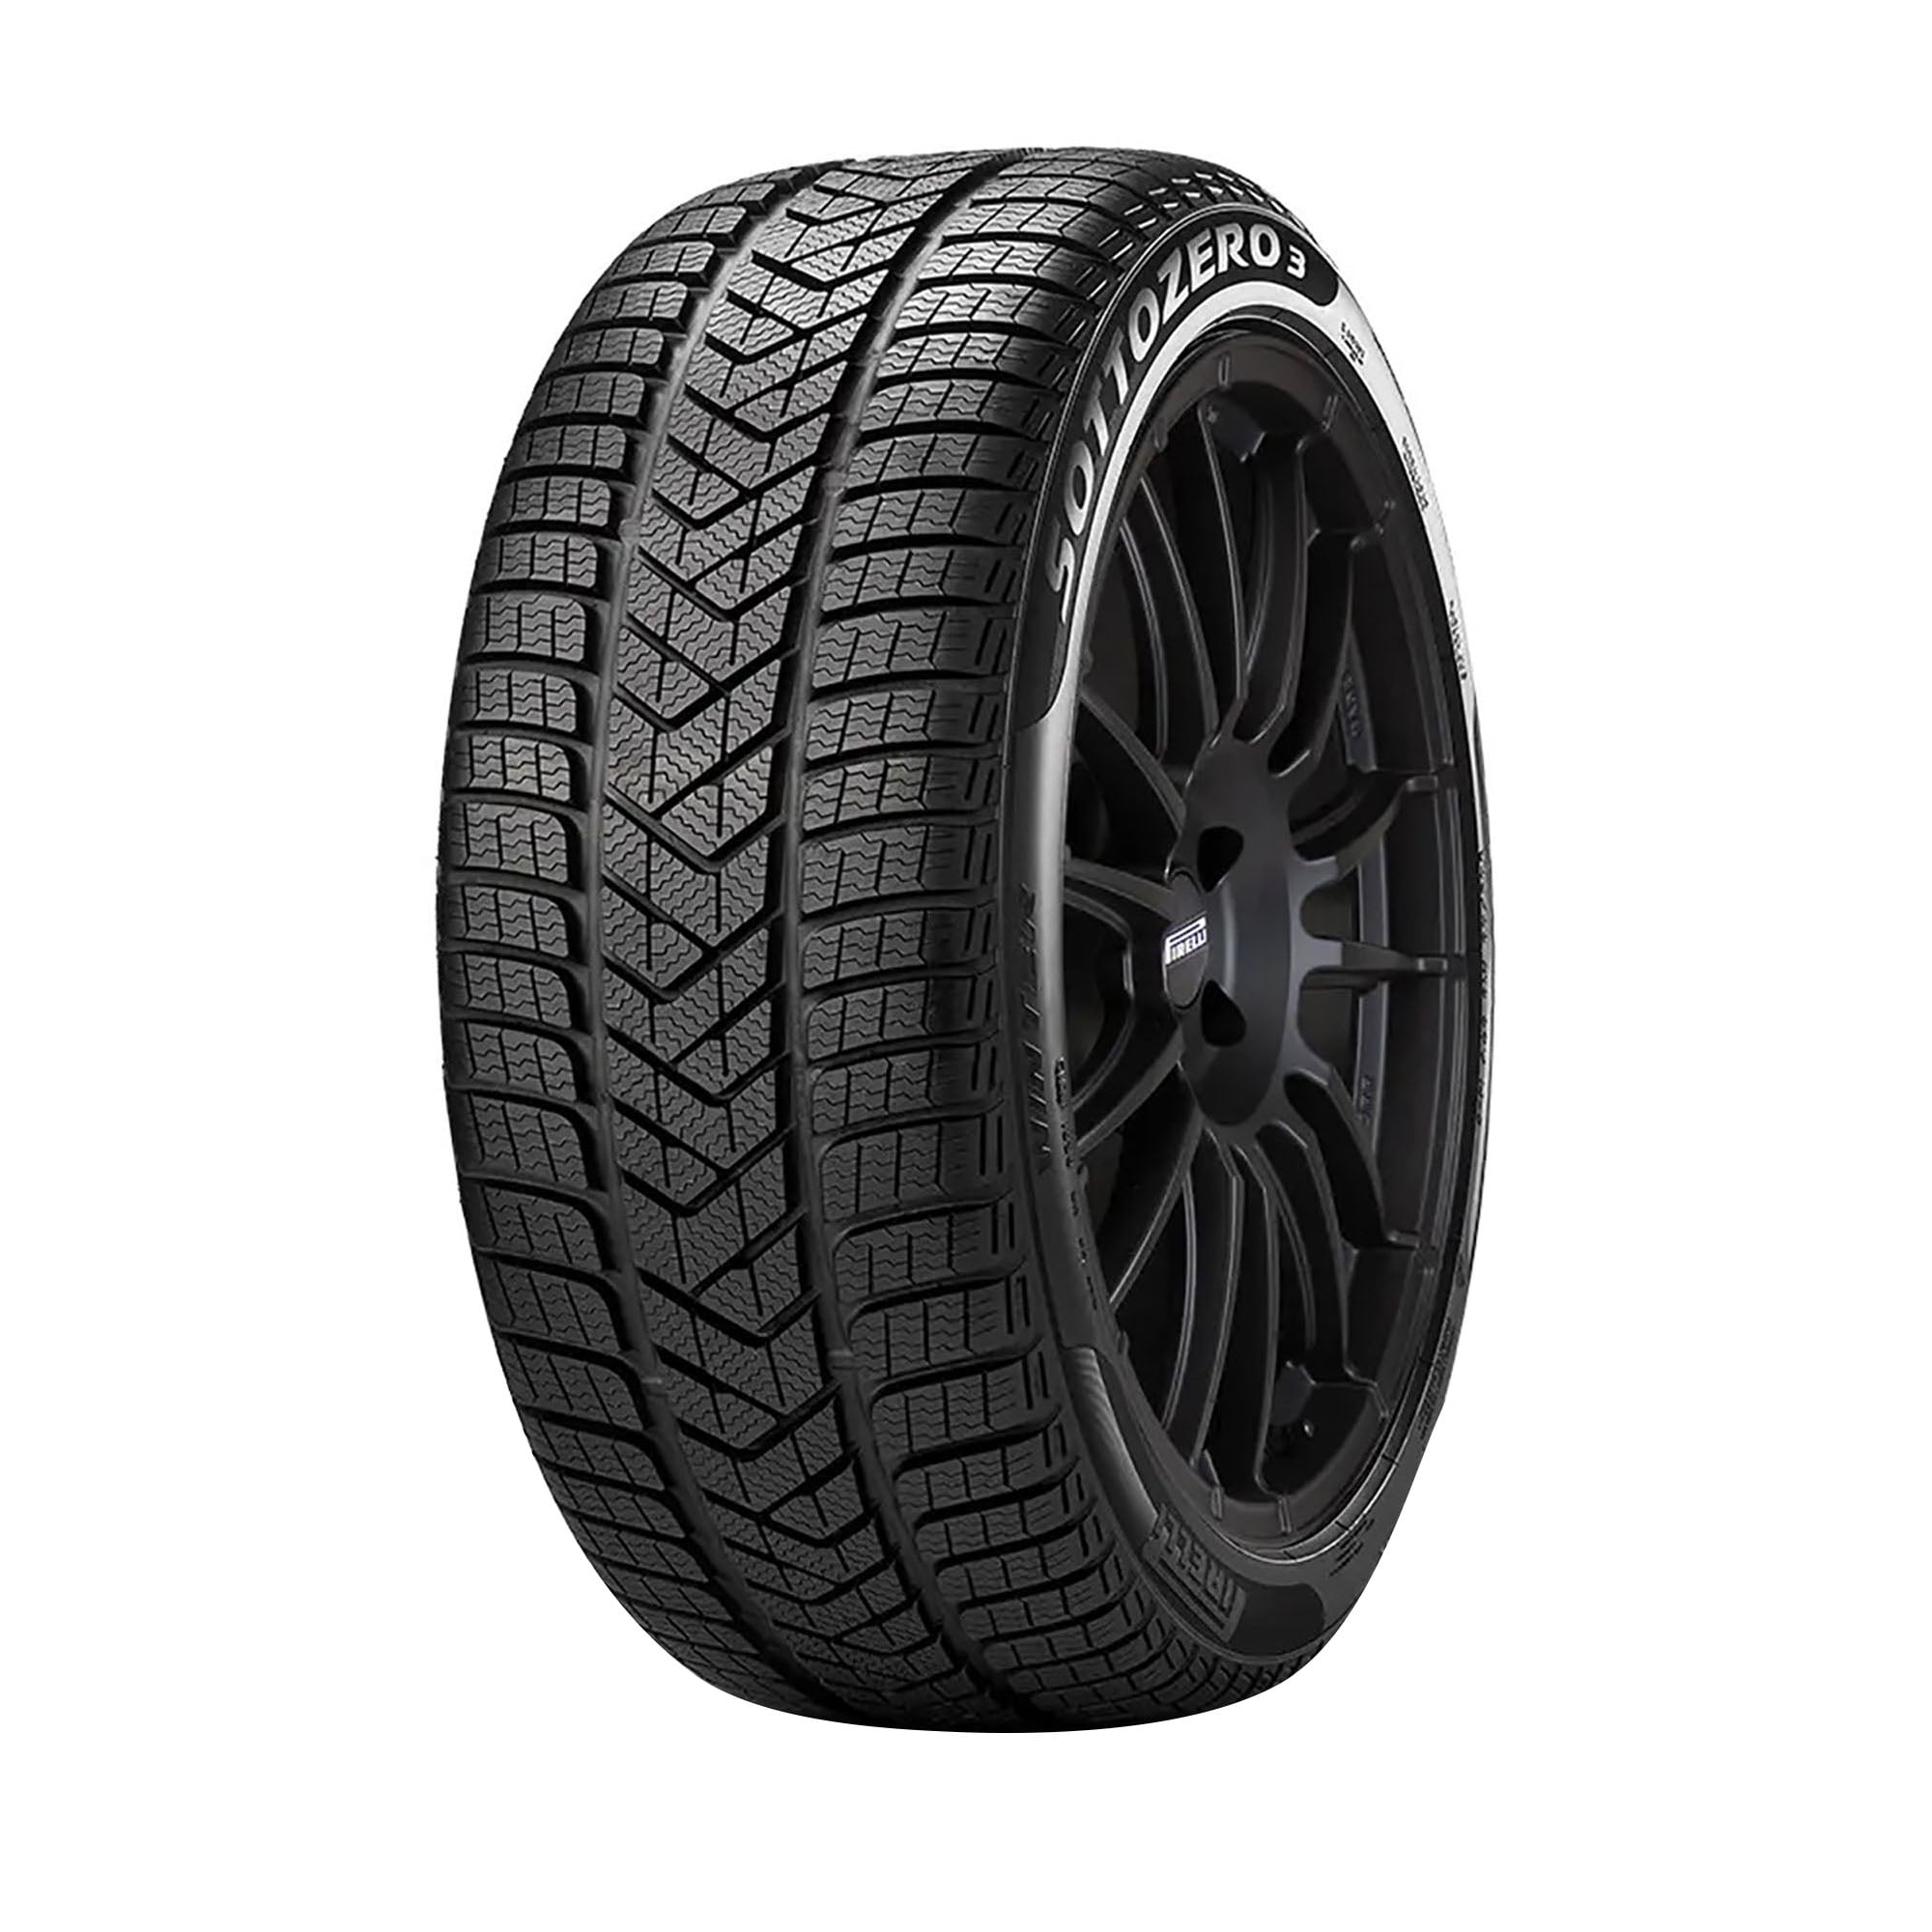 Pirelli Winter Sottozero 3 Winter 255/40R19 100V XL Passenger Tire